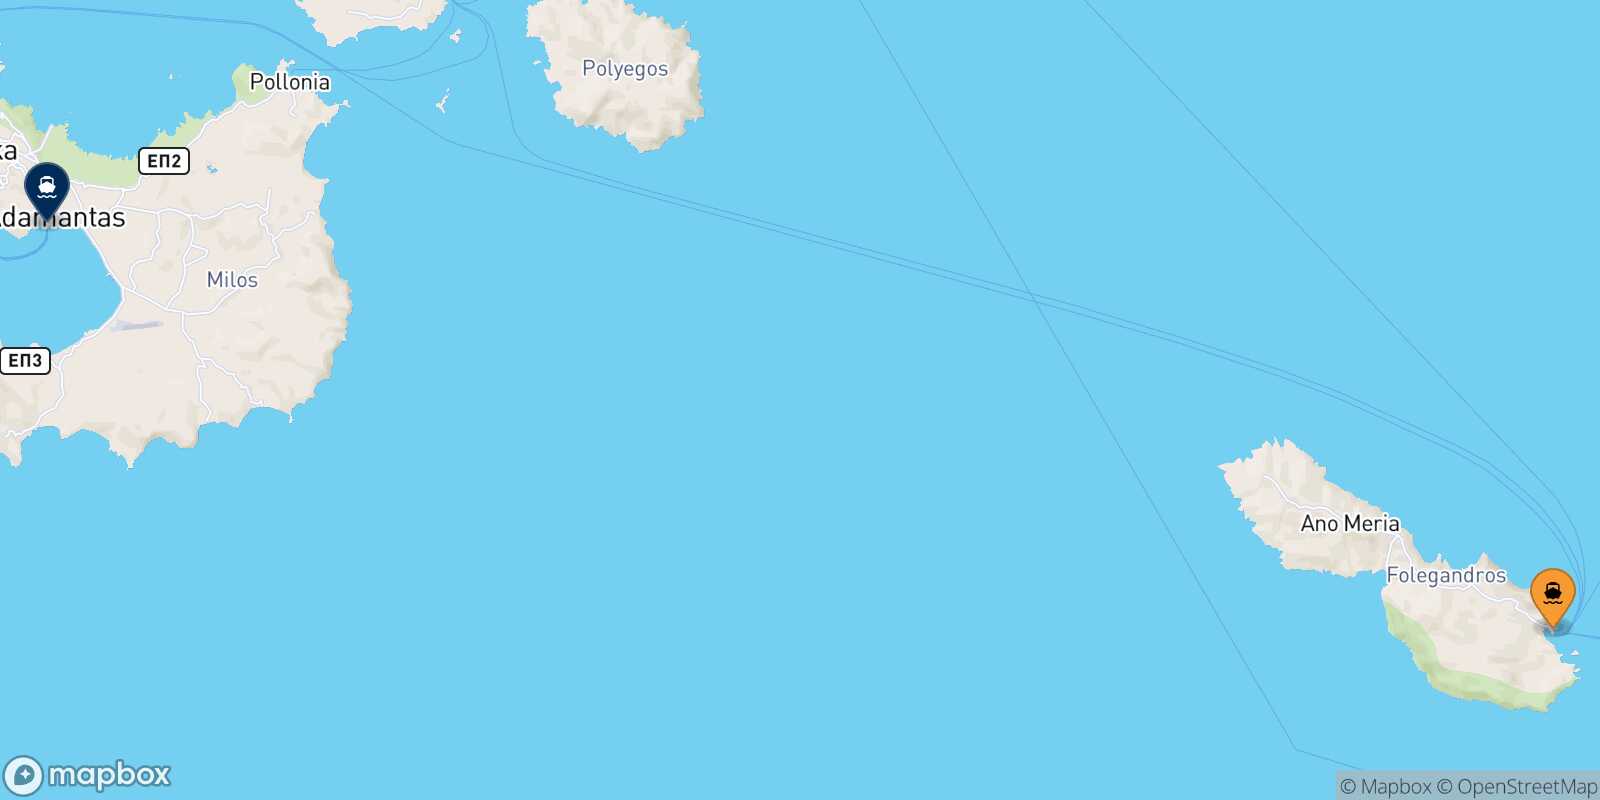 Folegandros Milos route map